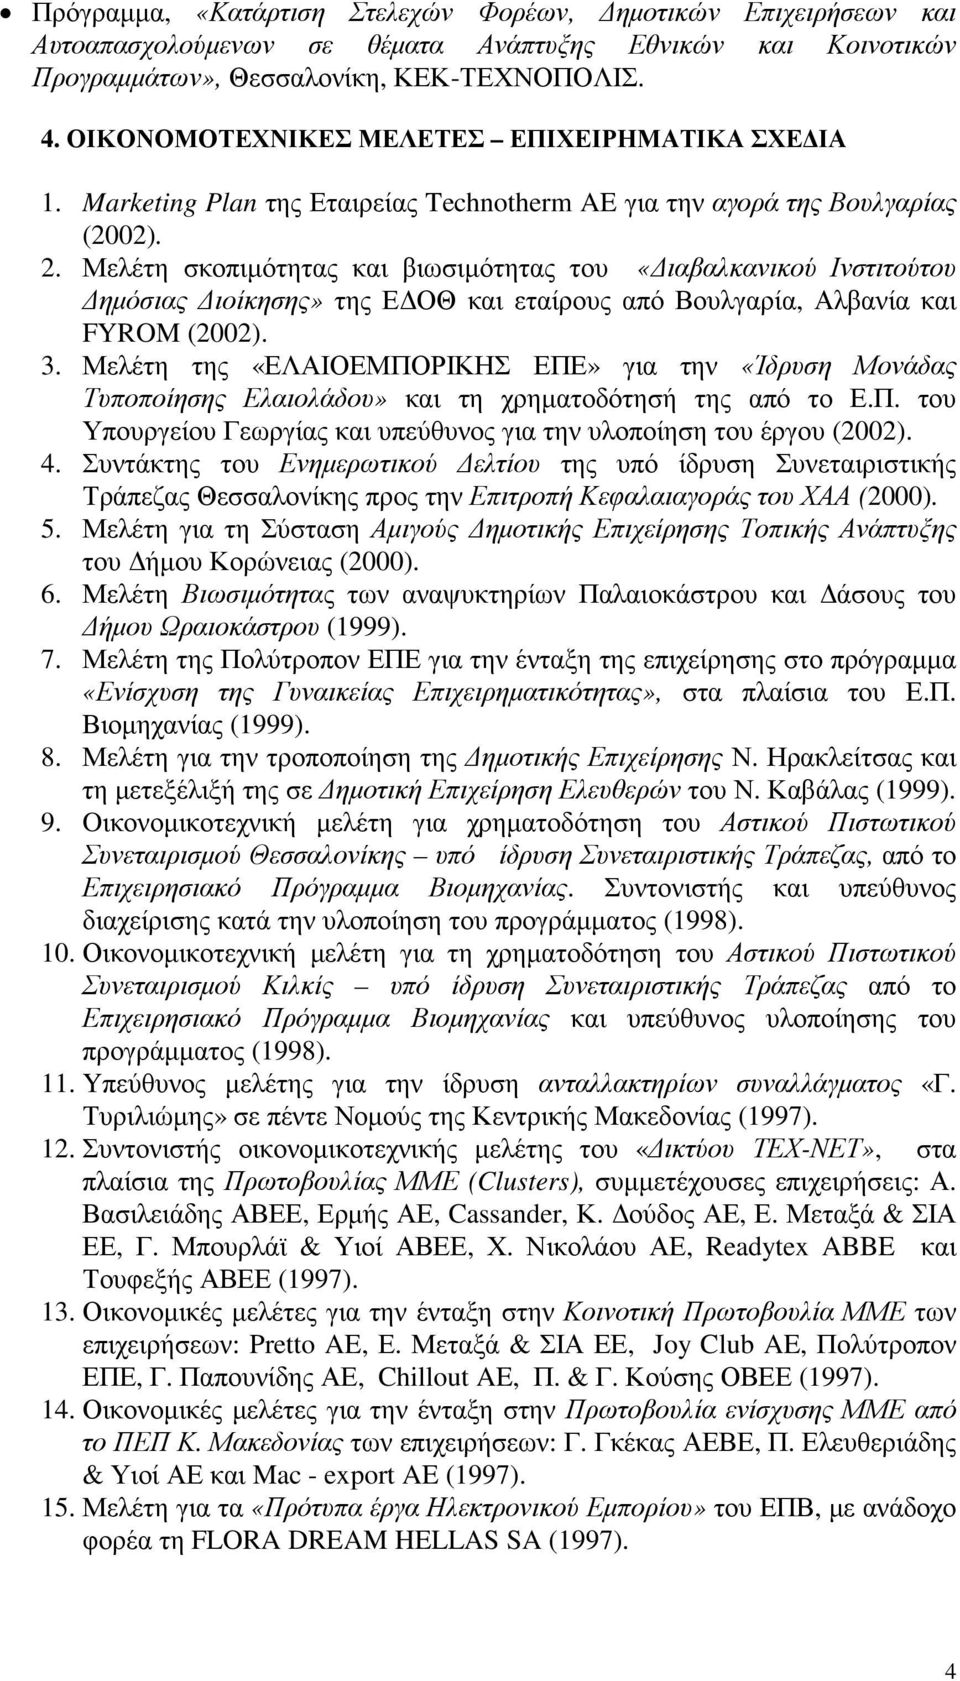 Μελέτη σκοπιµότητας και βιωσιµότητας του «ιαβαλκανικού Ινστιτούτου ηµόσιας ιοίκησης» της Ε ΟΘ και εταίρους από Βουλγαρία, Αλβανία και FYROM (2002). 3.